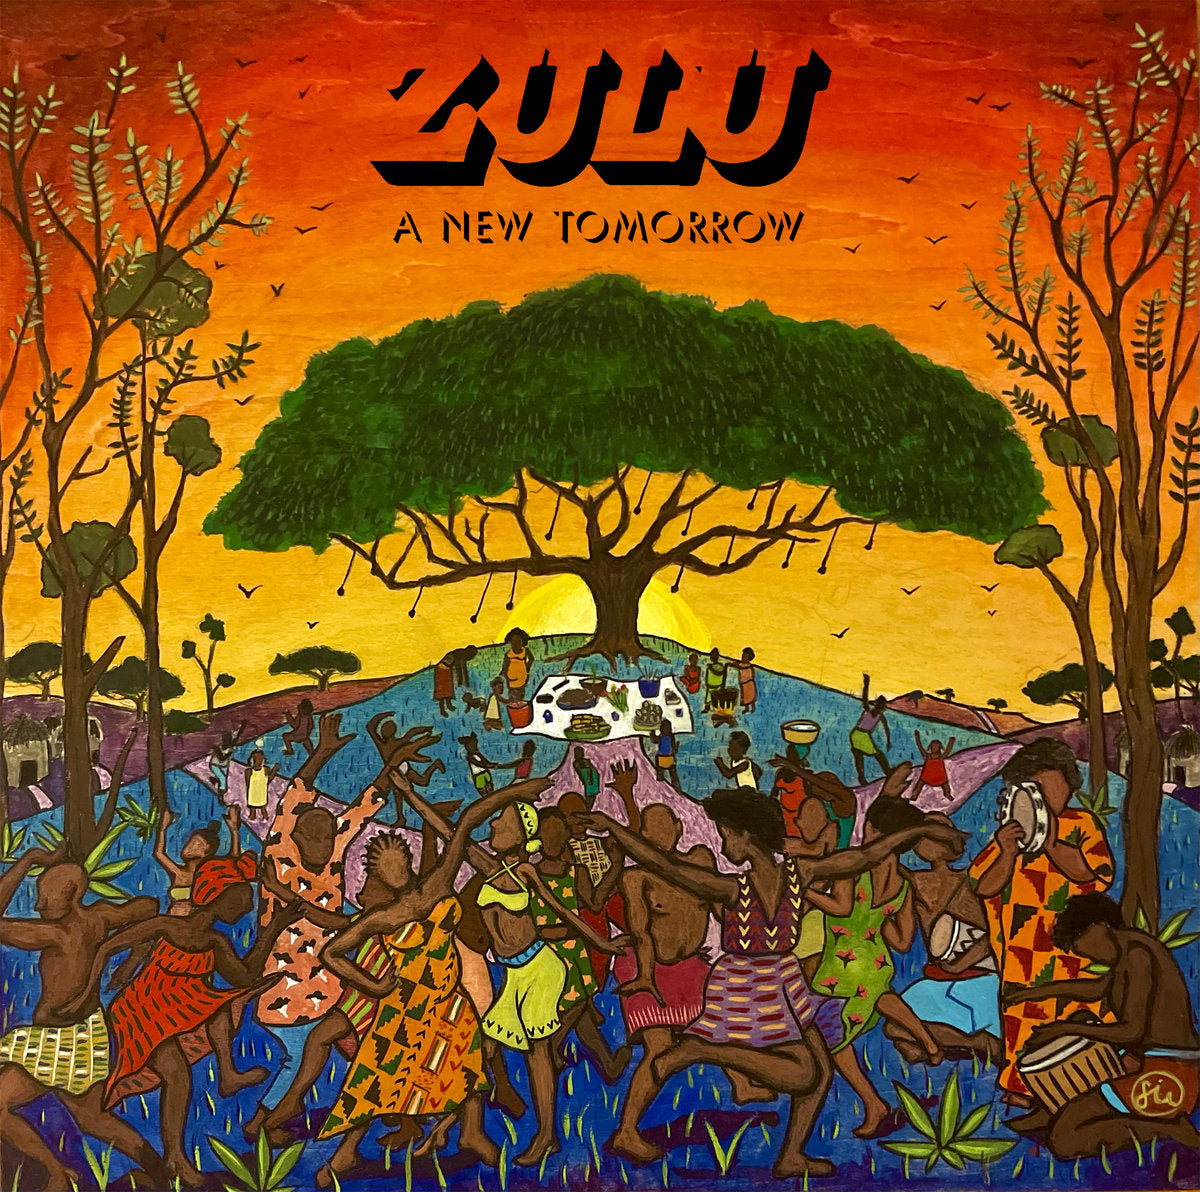 Zulu "A New Tomorrow" 12" Vinyl